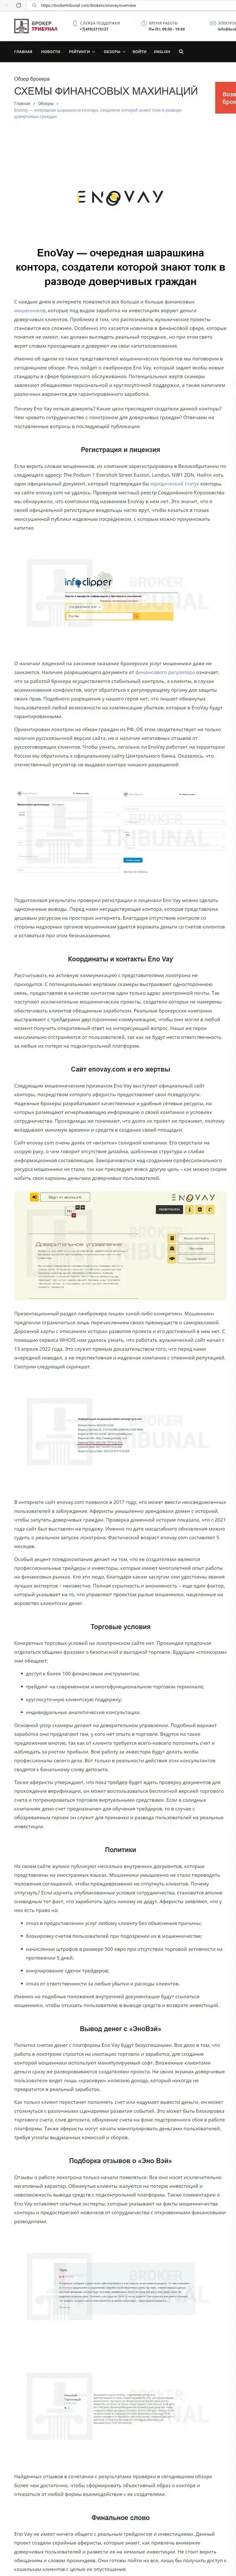 СВЯЗЫВАТЬСЯ ВЕСЬМА РИСКОВАННО - статья с обзором мошеннических действий EnoVay Com